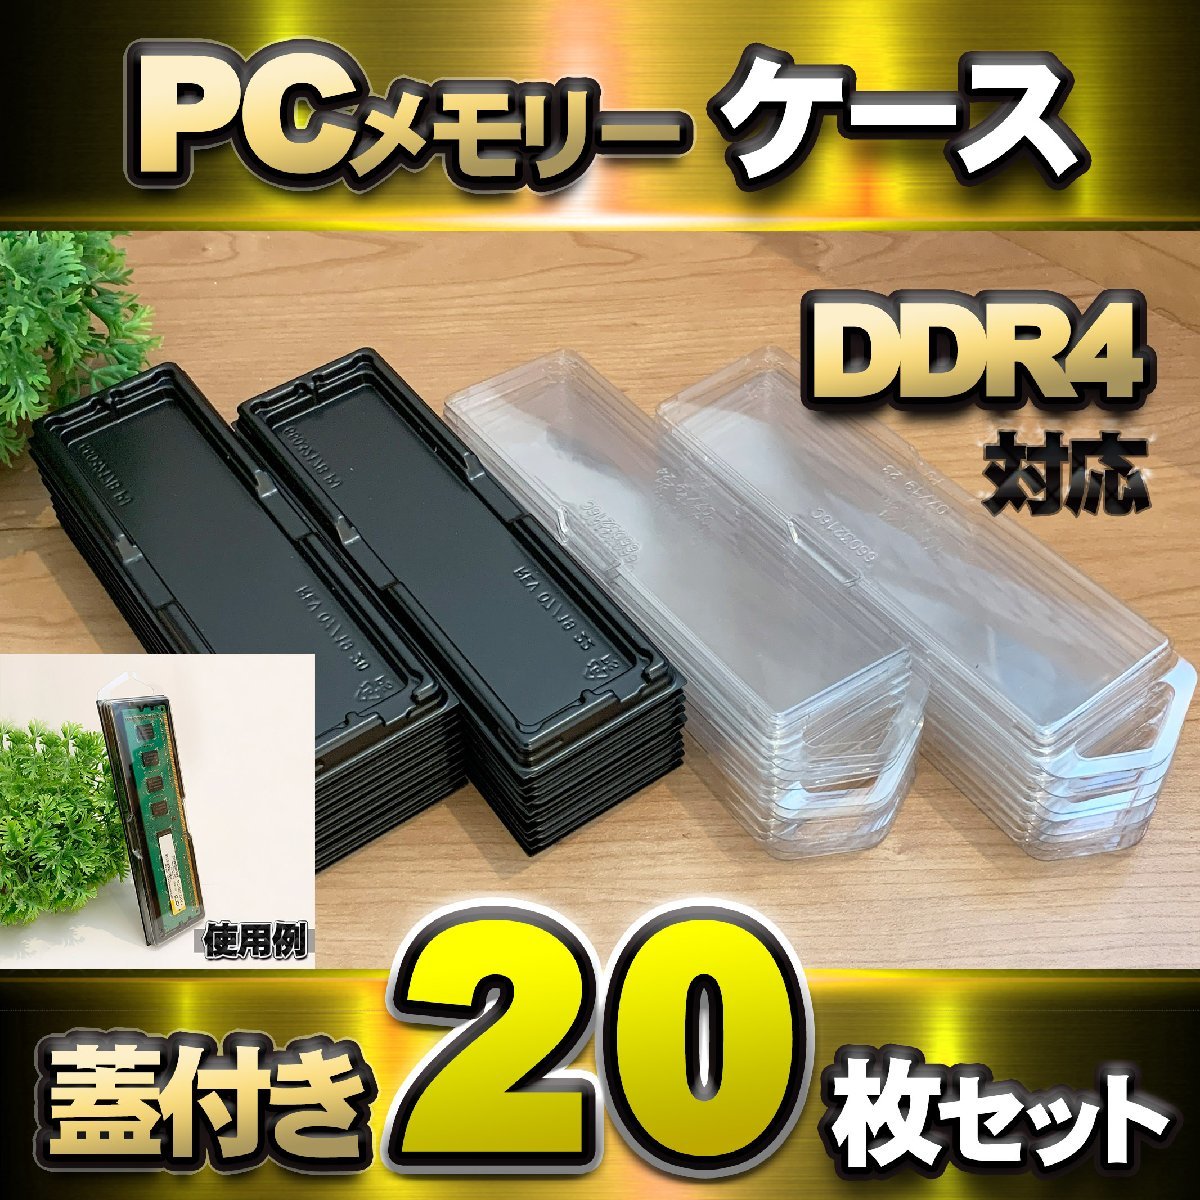 【 DDR4 対応 】蓋付き PC メモリー シェルケース DIMM 用 プラスチック 保管 収納ケース 20枚セット_画像1